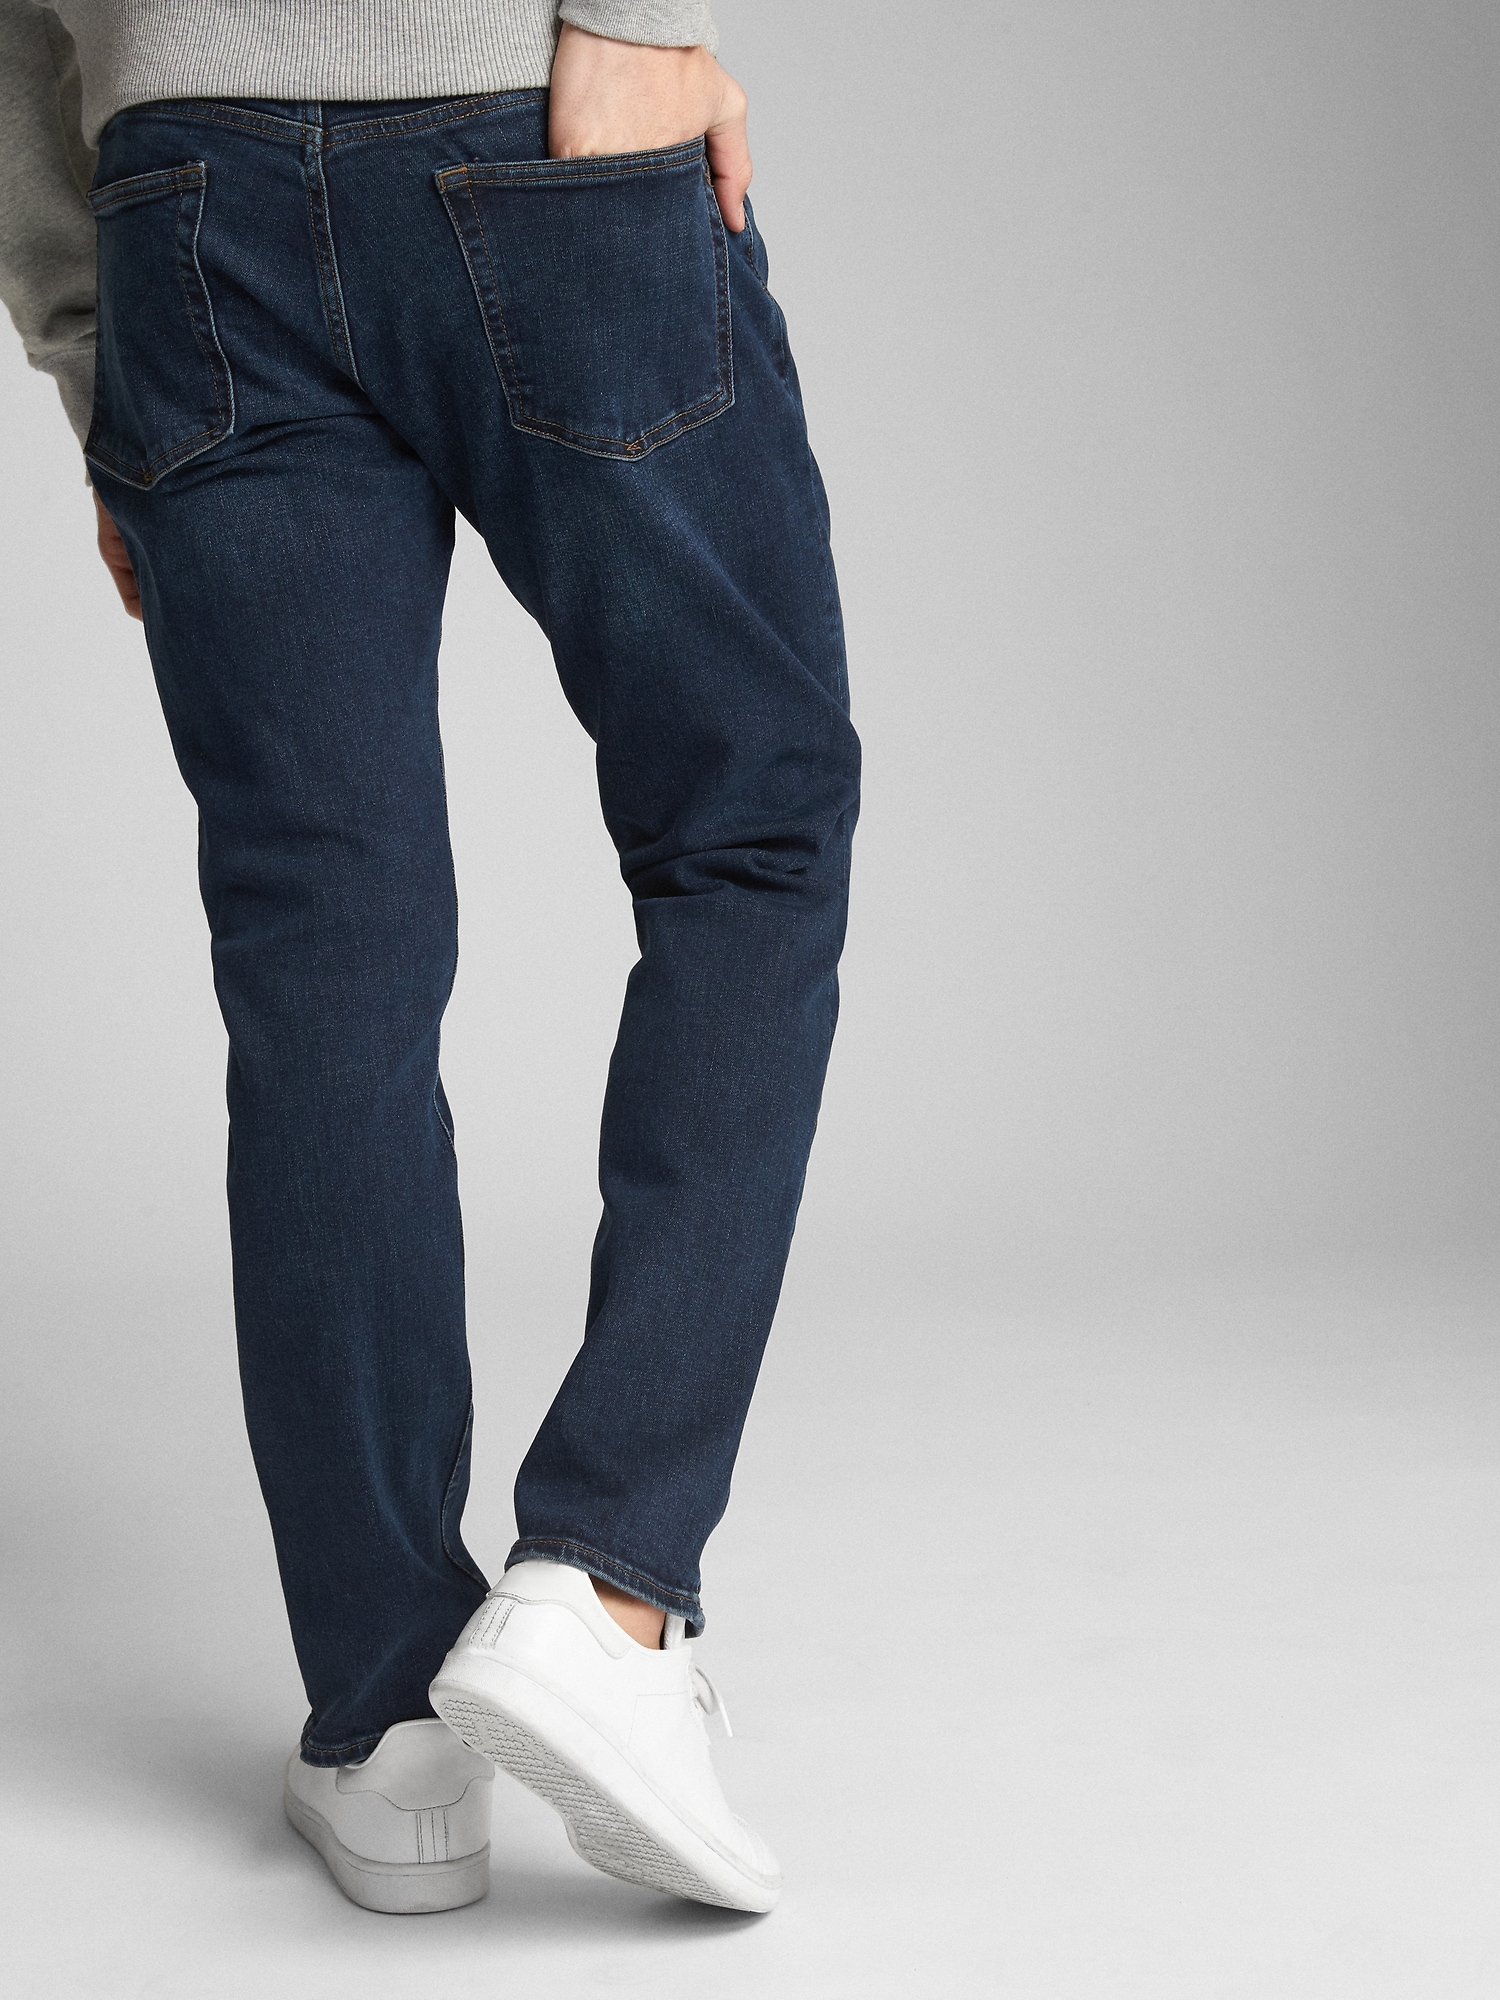 gap slim straight jeans mens